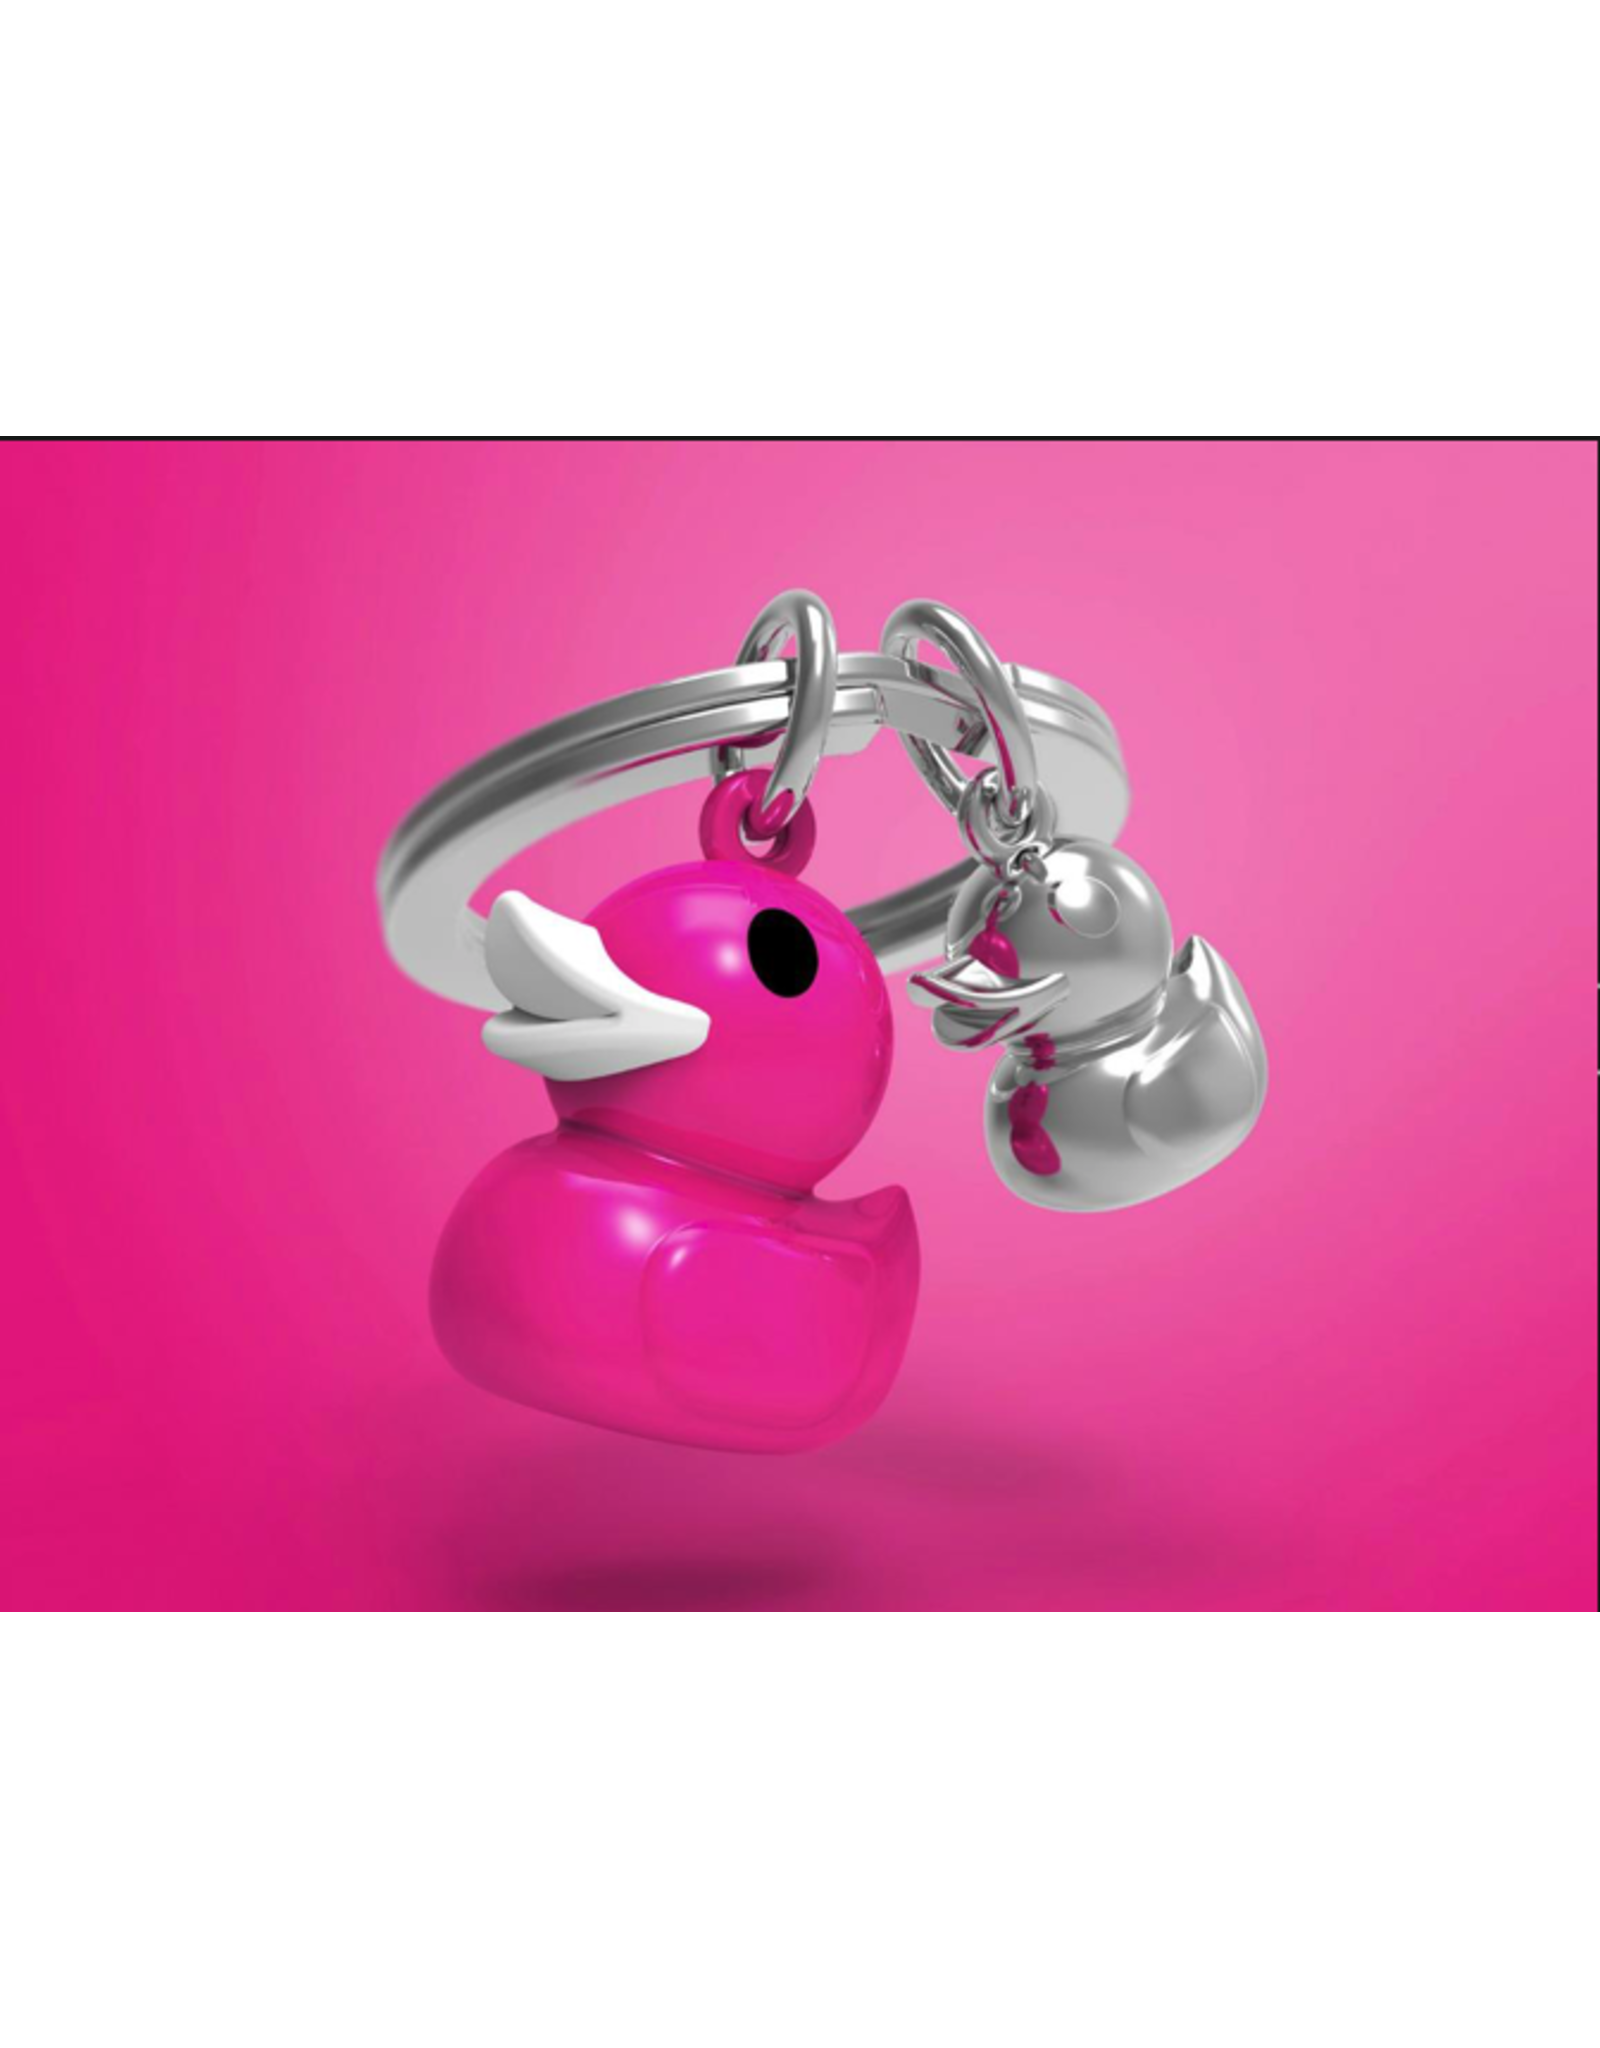 Metalmorphose Rubber Duck Key Ring - Pink